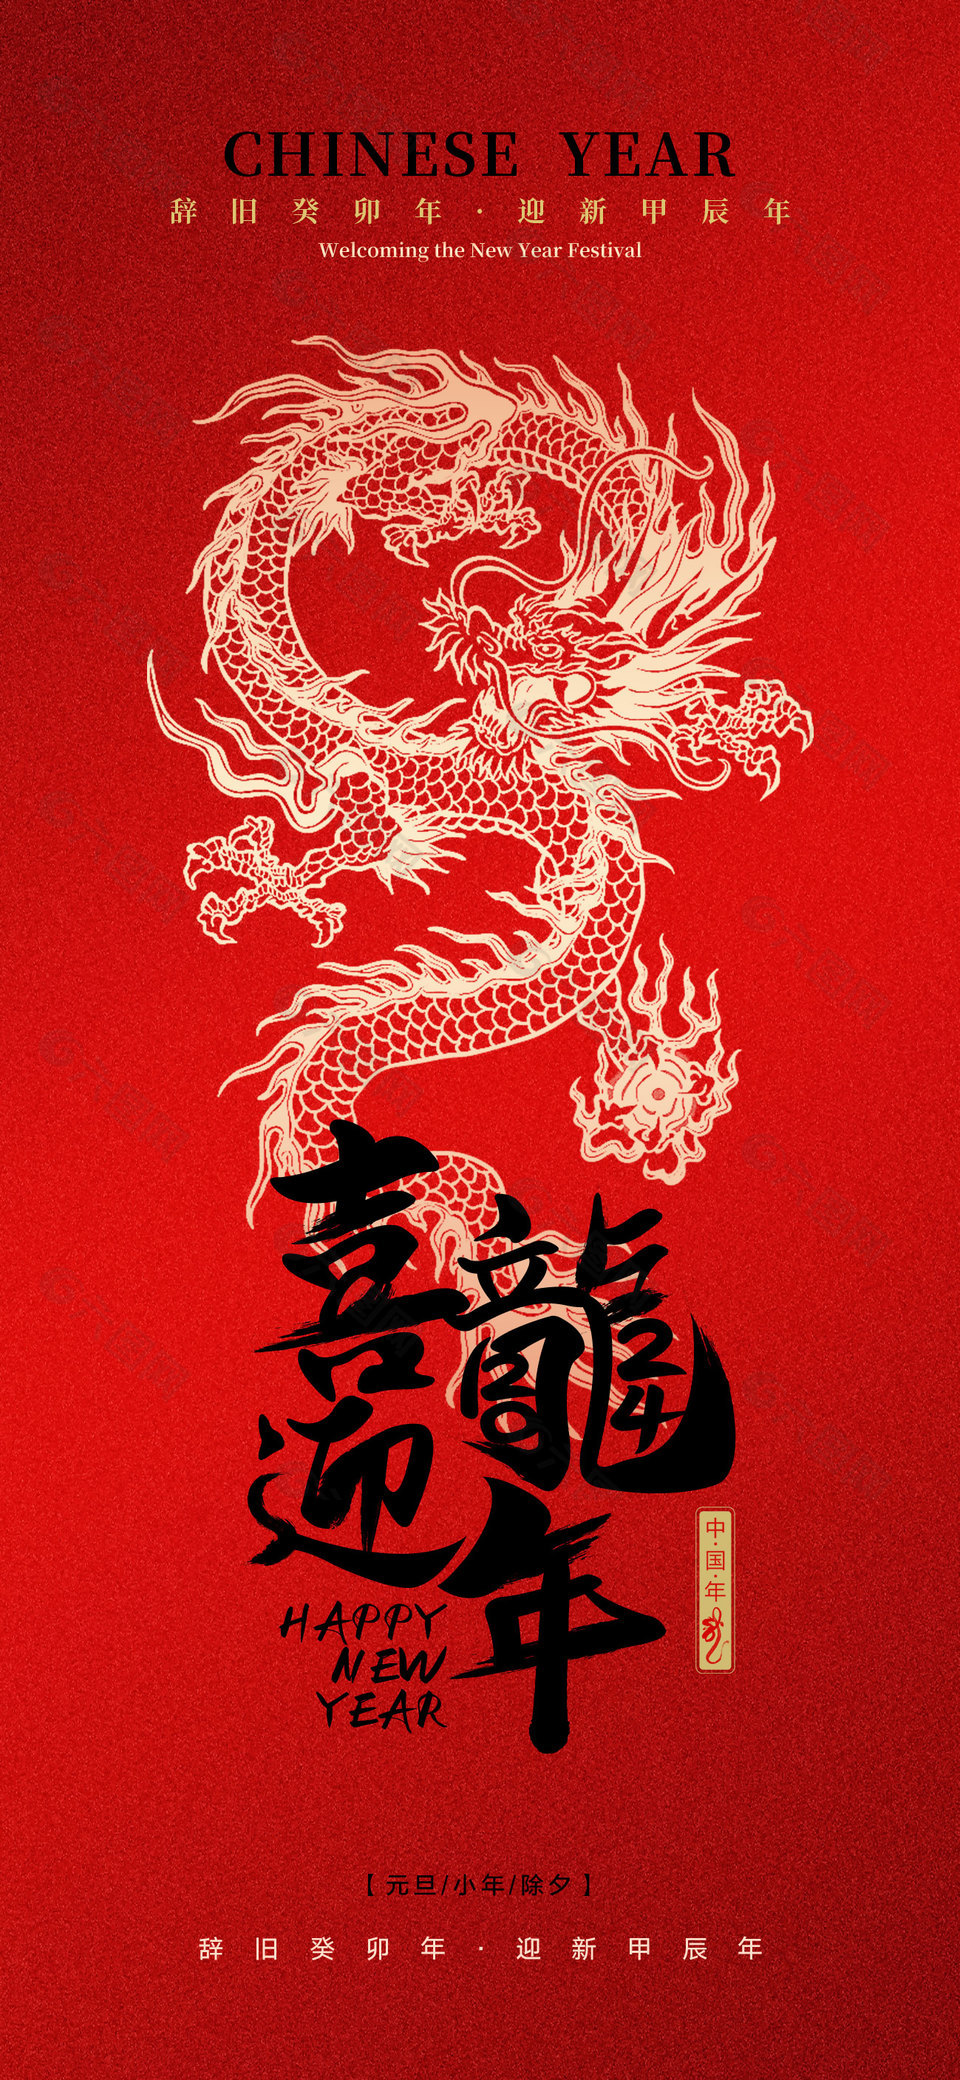 辞旧迎新中国年红色背景海报